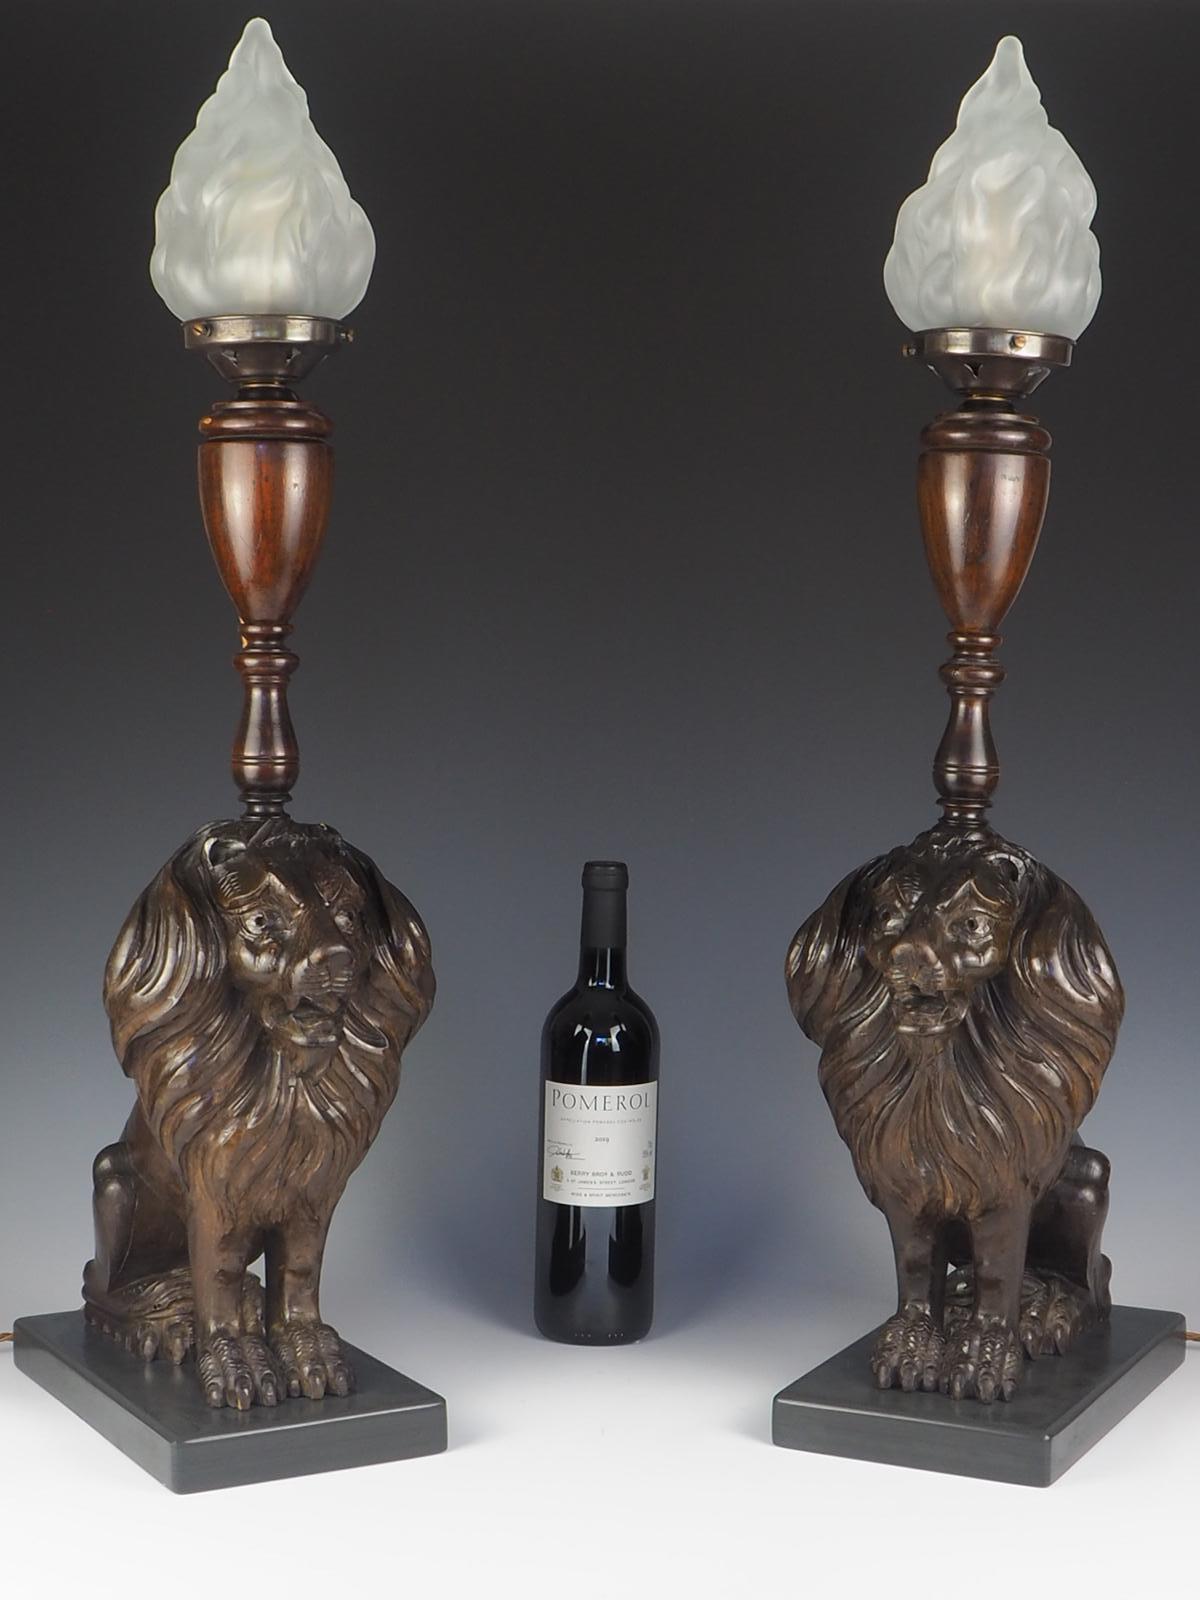 Paire de lampes-lions en chêne sculpté du XIXe siècle

Belle paire de lampes lion en chêne sculpté avec abat-jour en verre dépoli. Cette paire de lampes de table du XIXe siècle présente chacune un lion fièrement assis sur un socle en ardoise